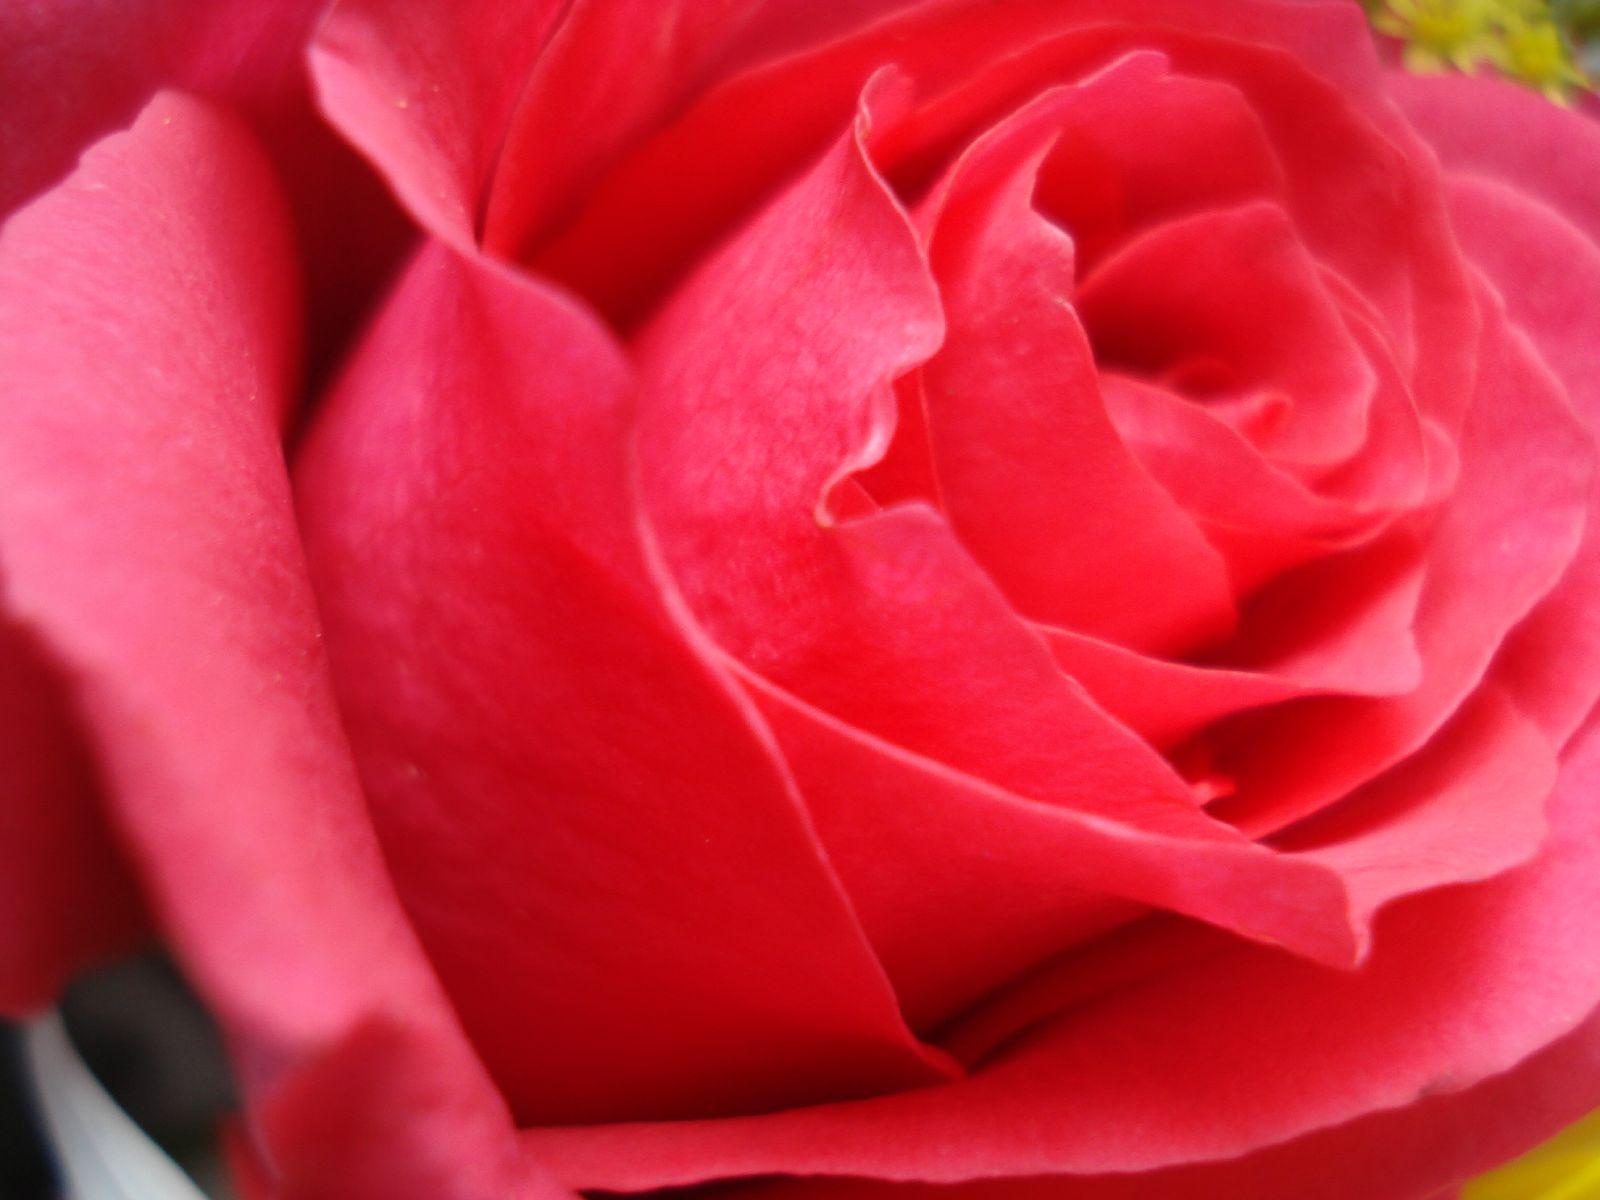 Rose Flower Wallpaper Image